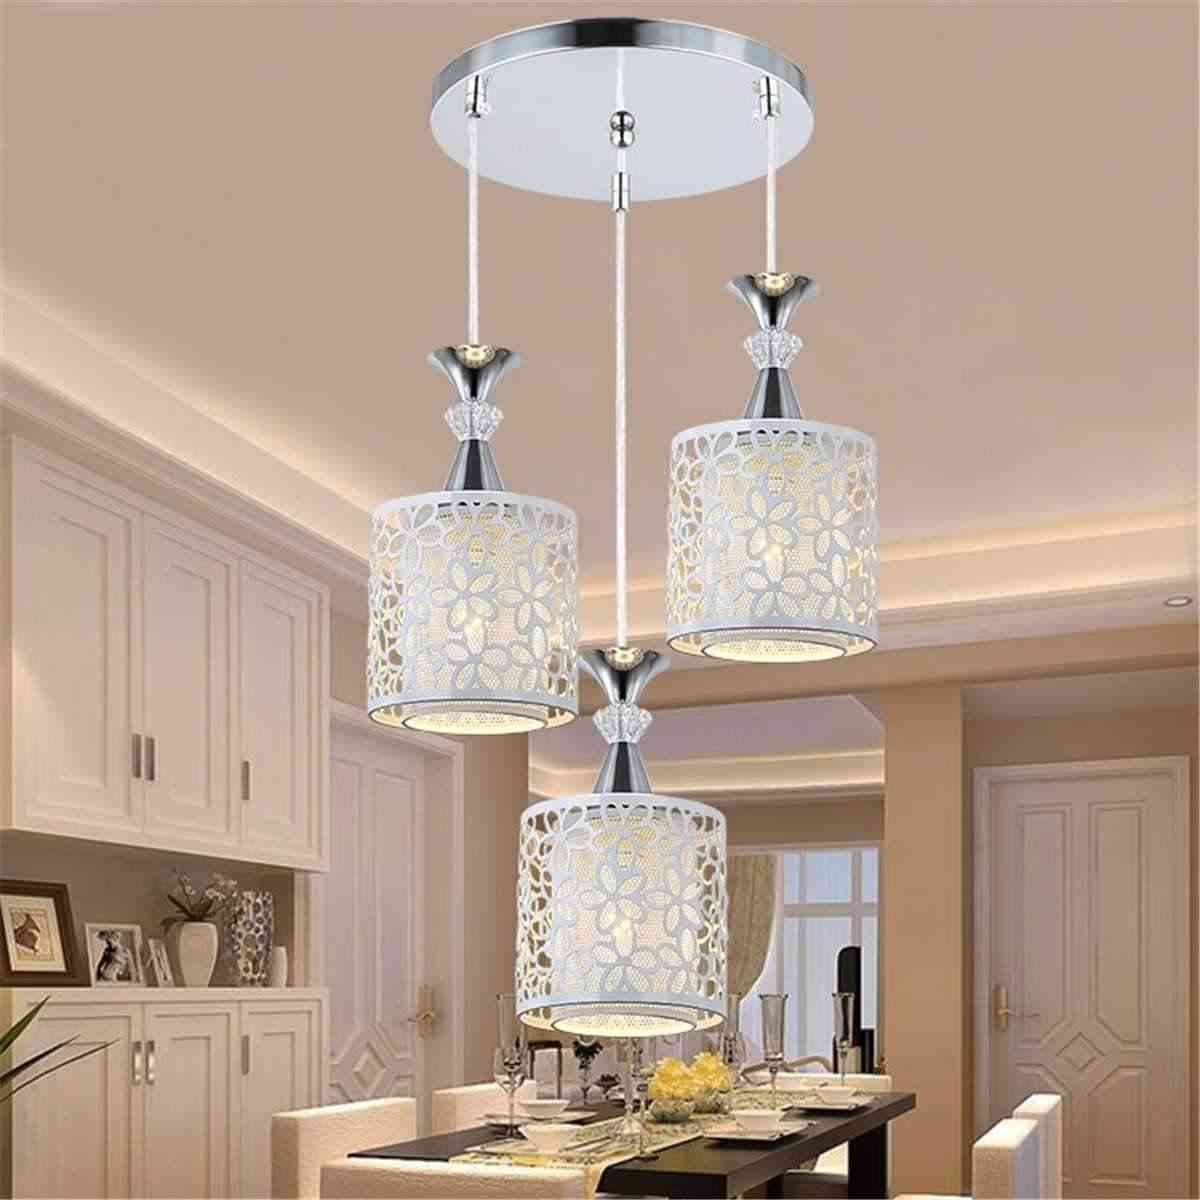 Moderne kristalne stropne svjetiljke - led svjetiljke